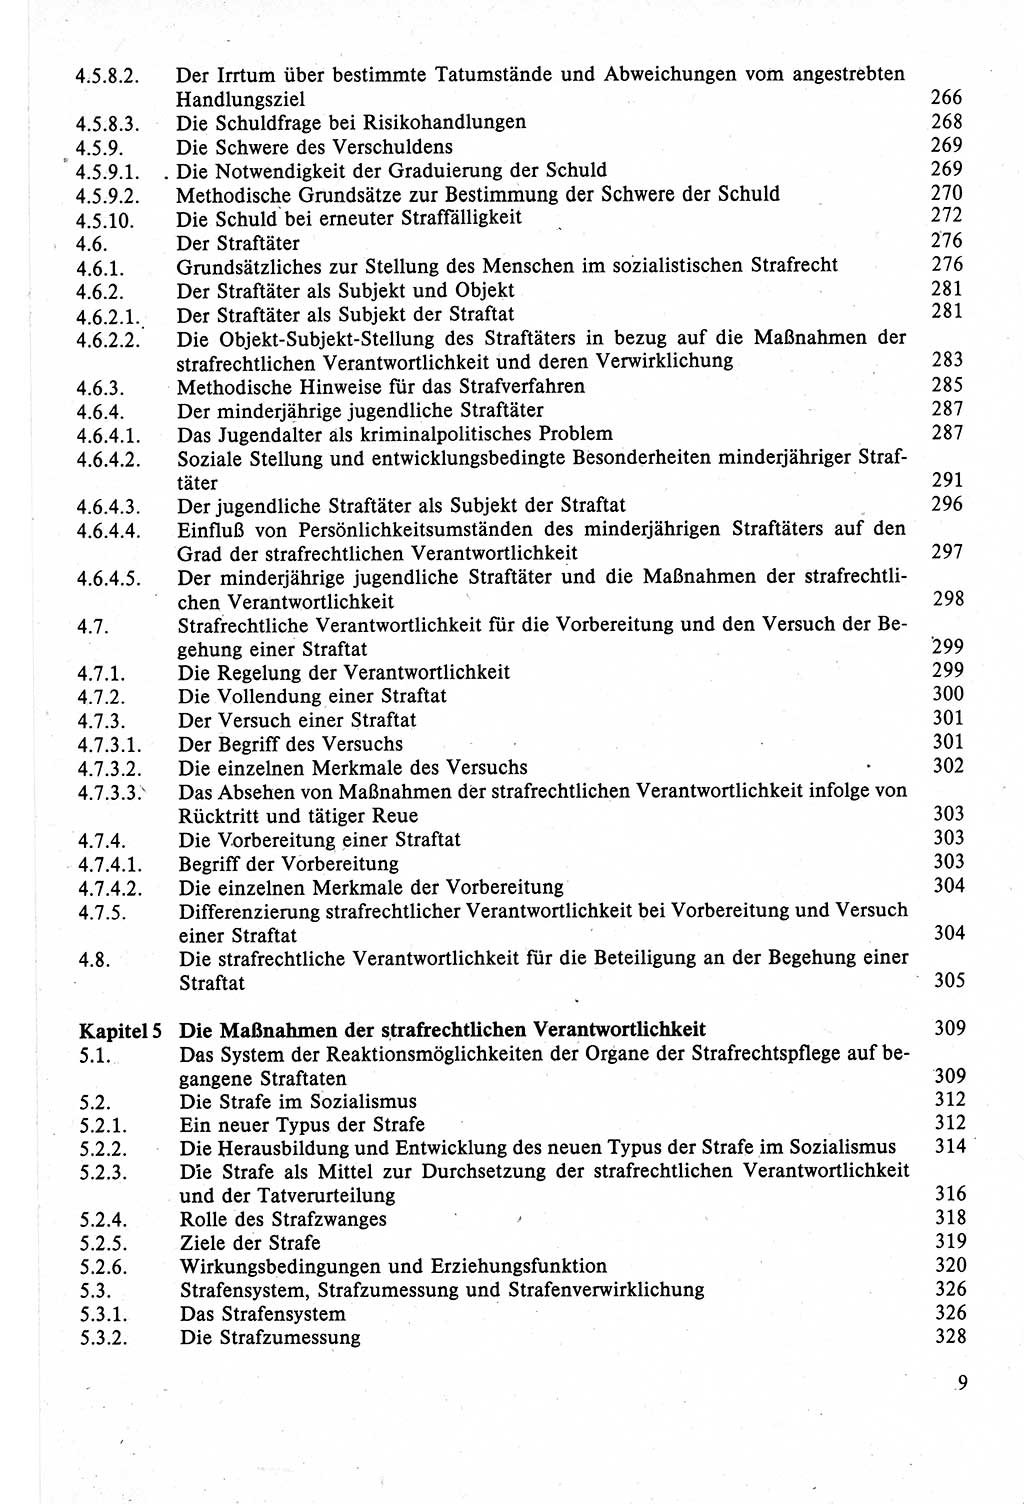 Strafrecht der DDR (Deutsche Demokratische Republik), Lehrbuch 1988, Seite 9 (Strafr. DDR Lb. 1988, S. 9)